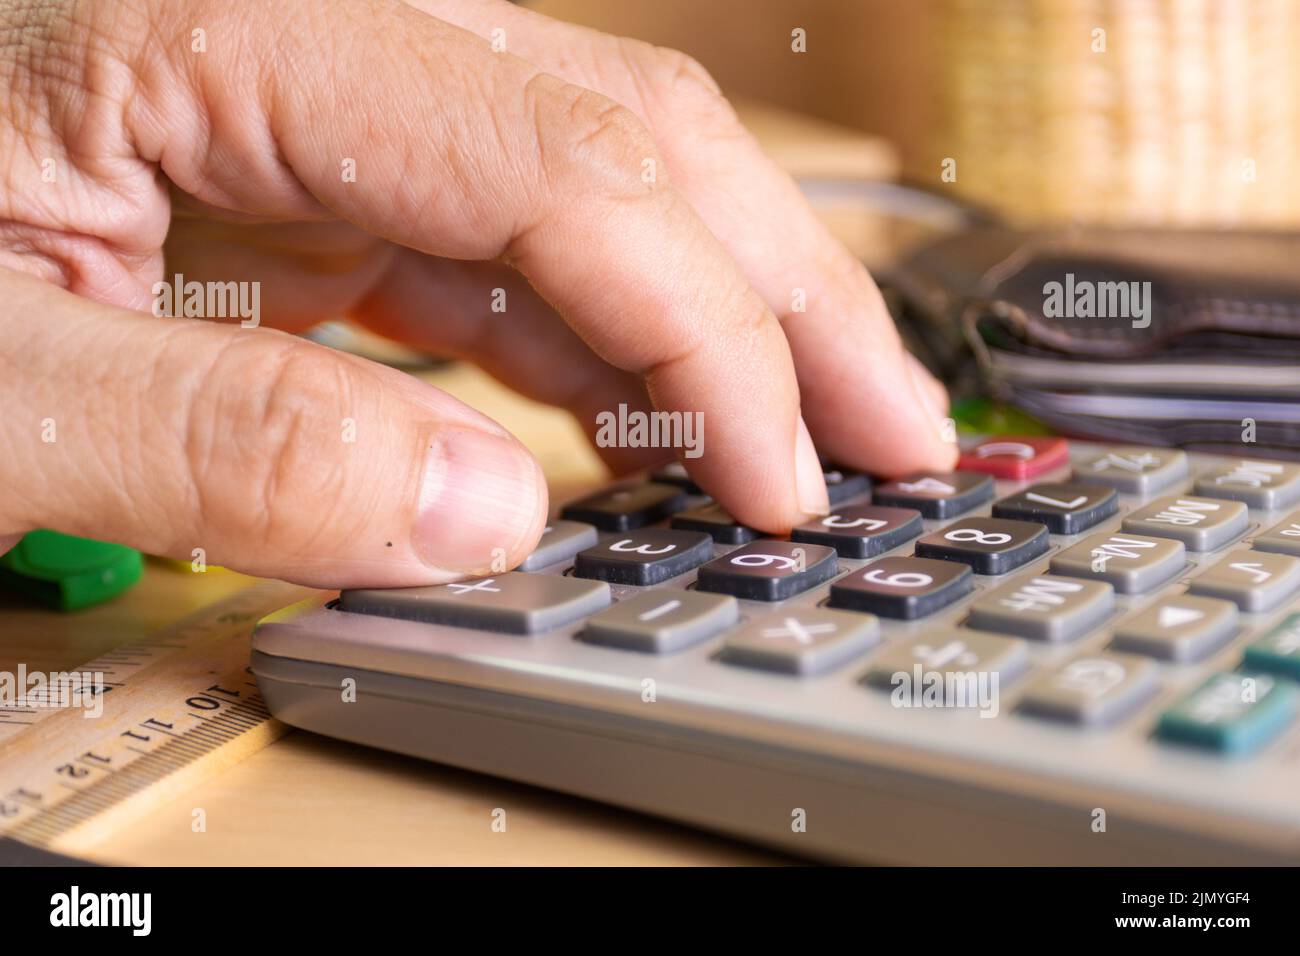 Gros plan doigt bouton de touche de la calculatrice concept calcul du revenu, des dépenses, du calcul Banque D'Images